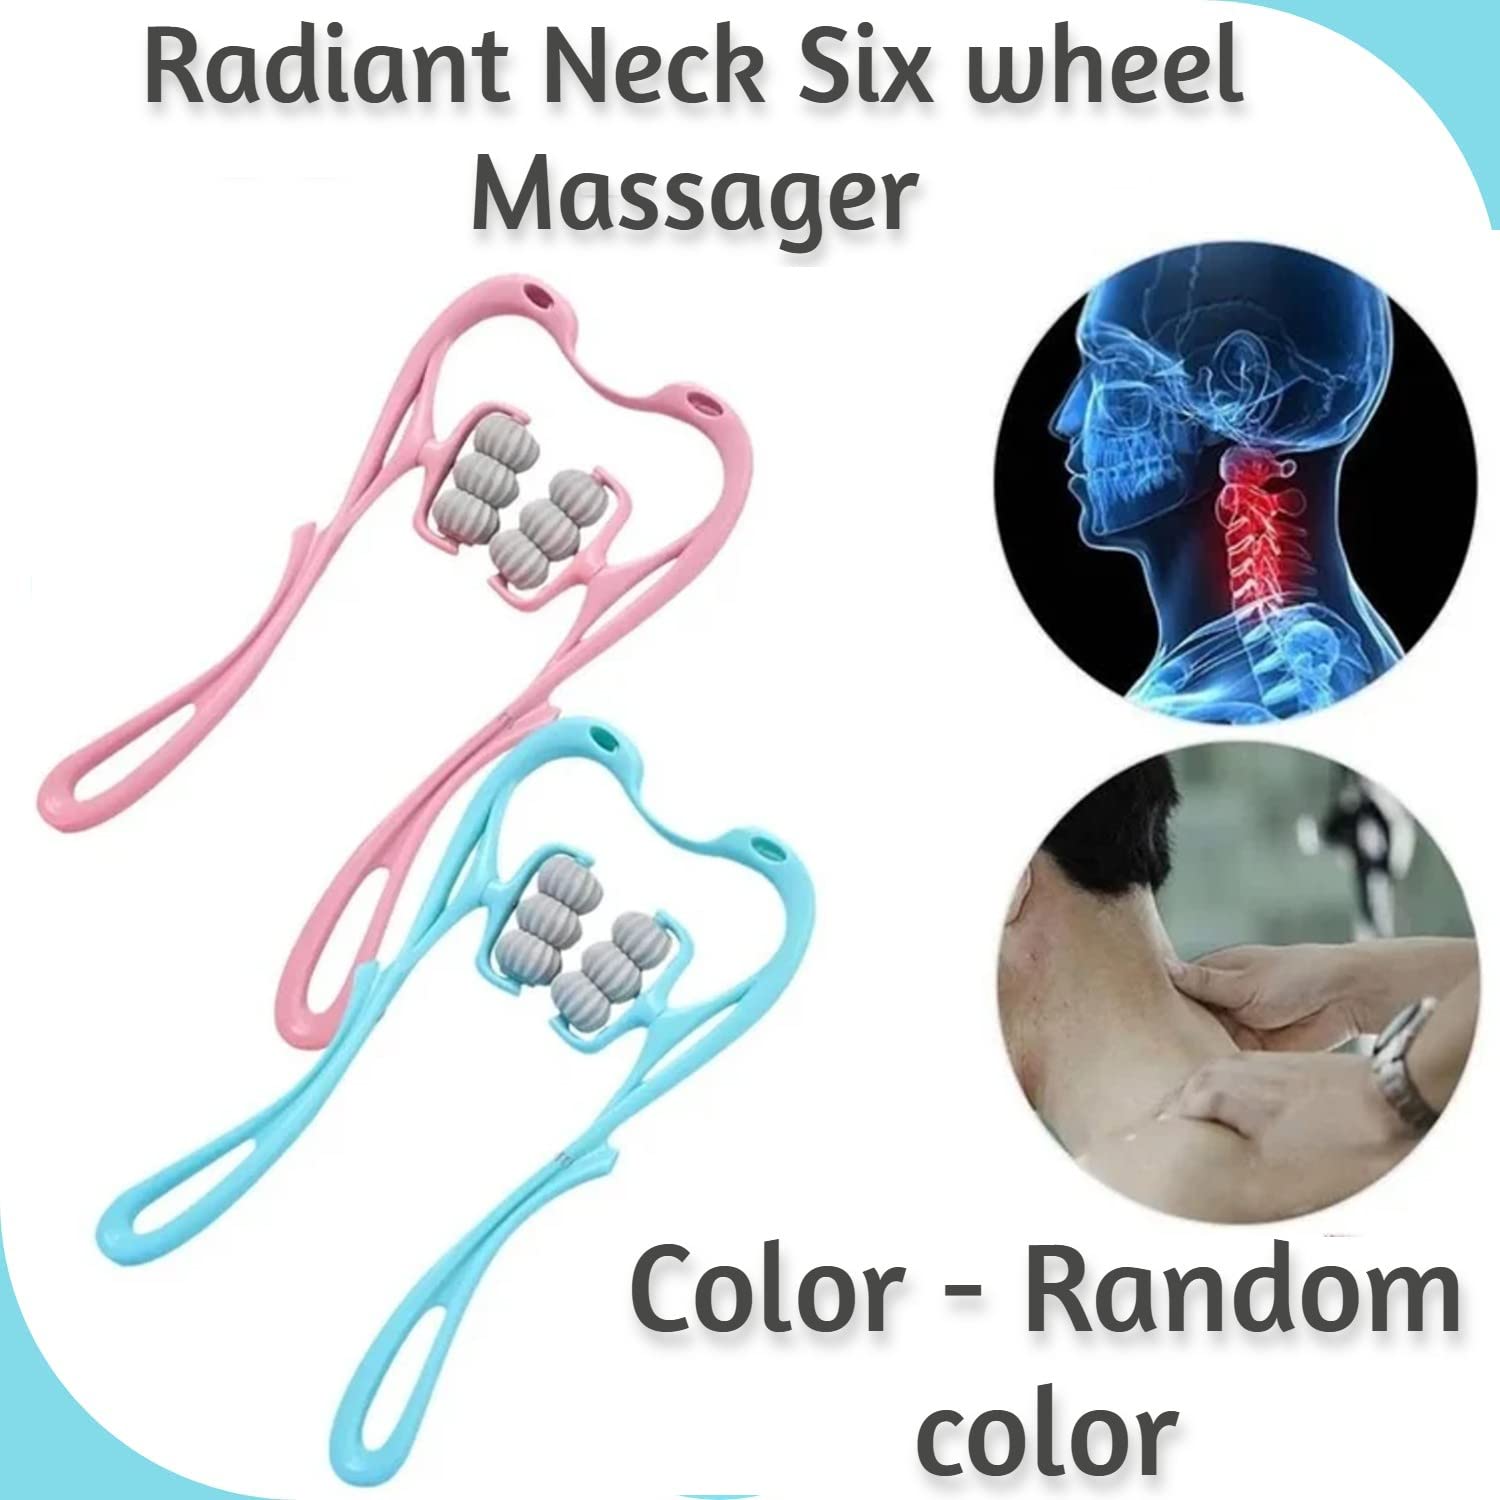 NUCARTURE Neck Massager for Cervical pain relief Manual Trigger Point Roller Massager deep Tissue Handheld Shoulder Massager Tool with 6 Balls for Legs Waist Neck(Random color)